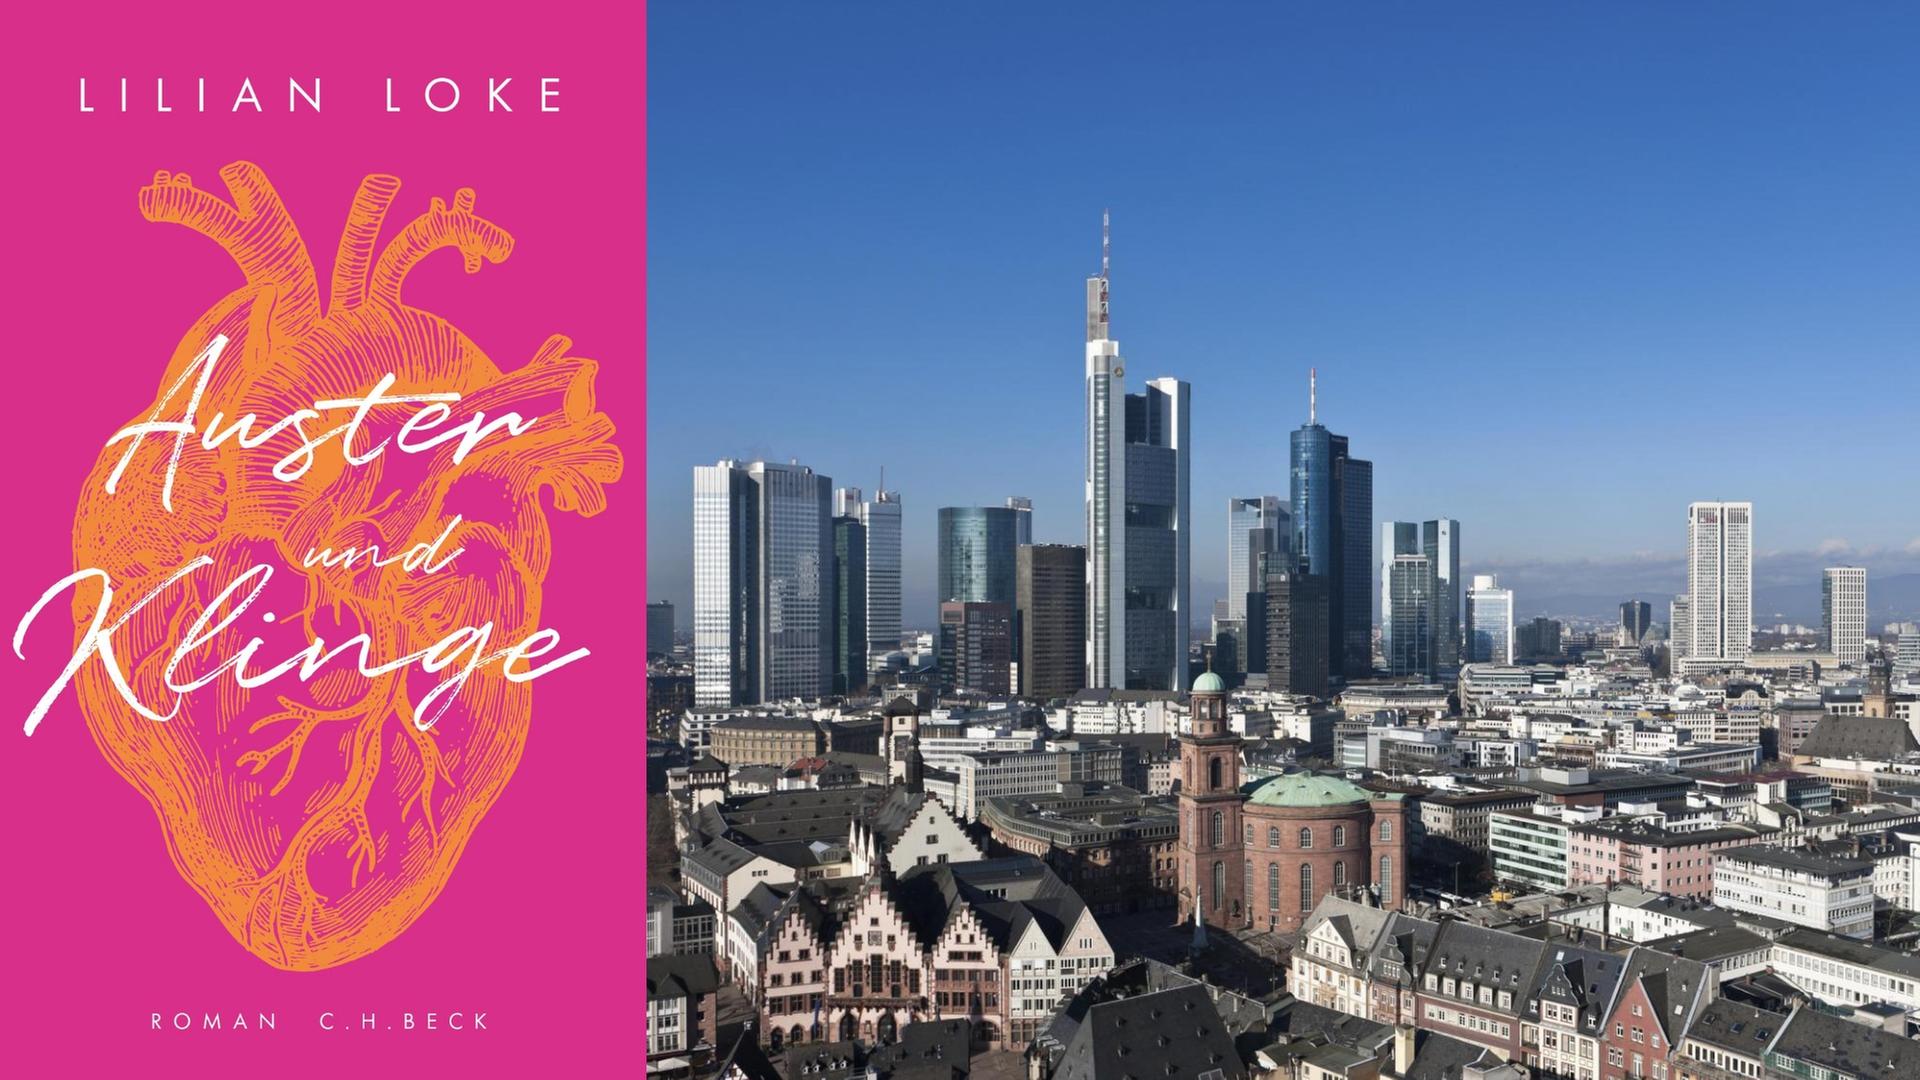 Buchcover: Lilian Loke: "Auster und Klinge" und Blick auf Frankfurt mit Skyline